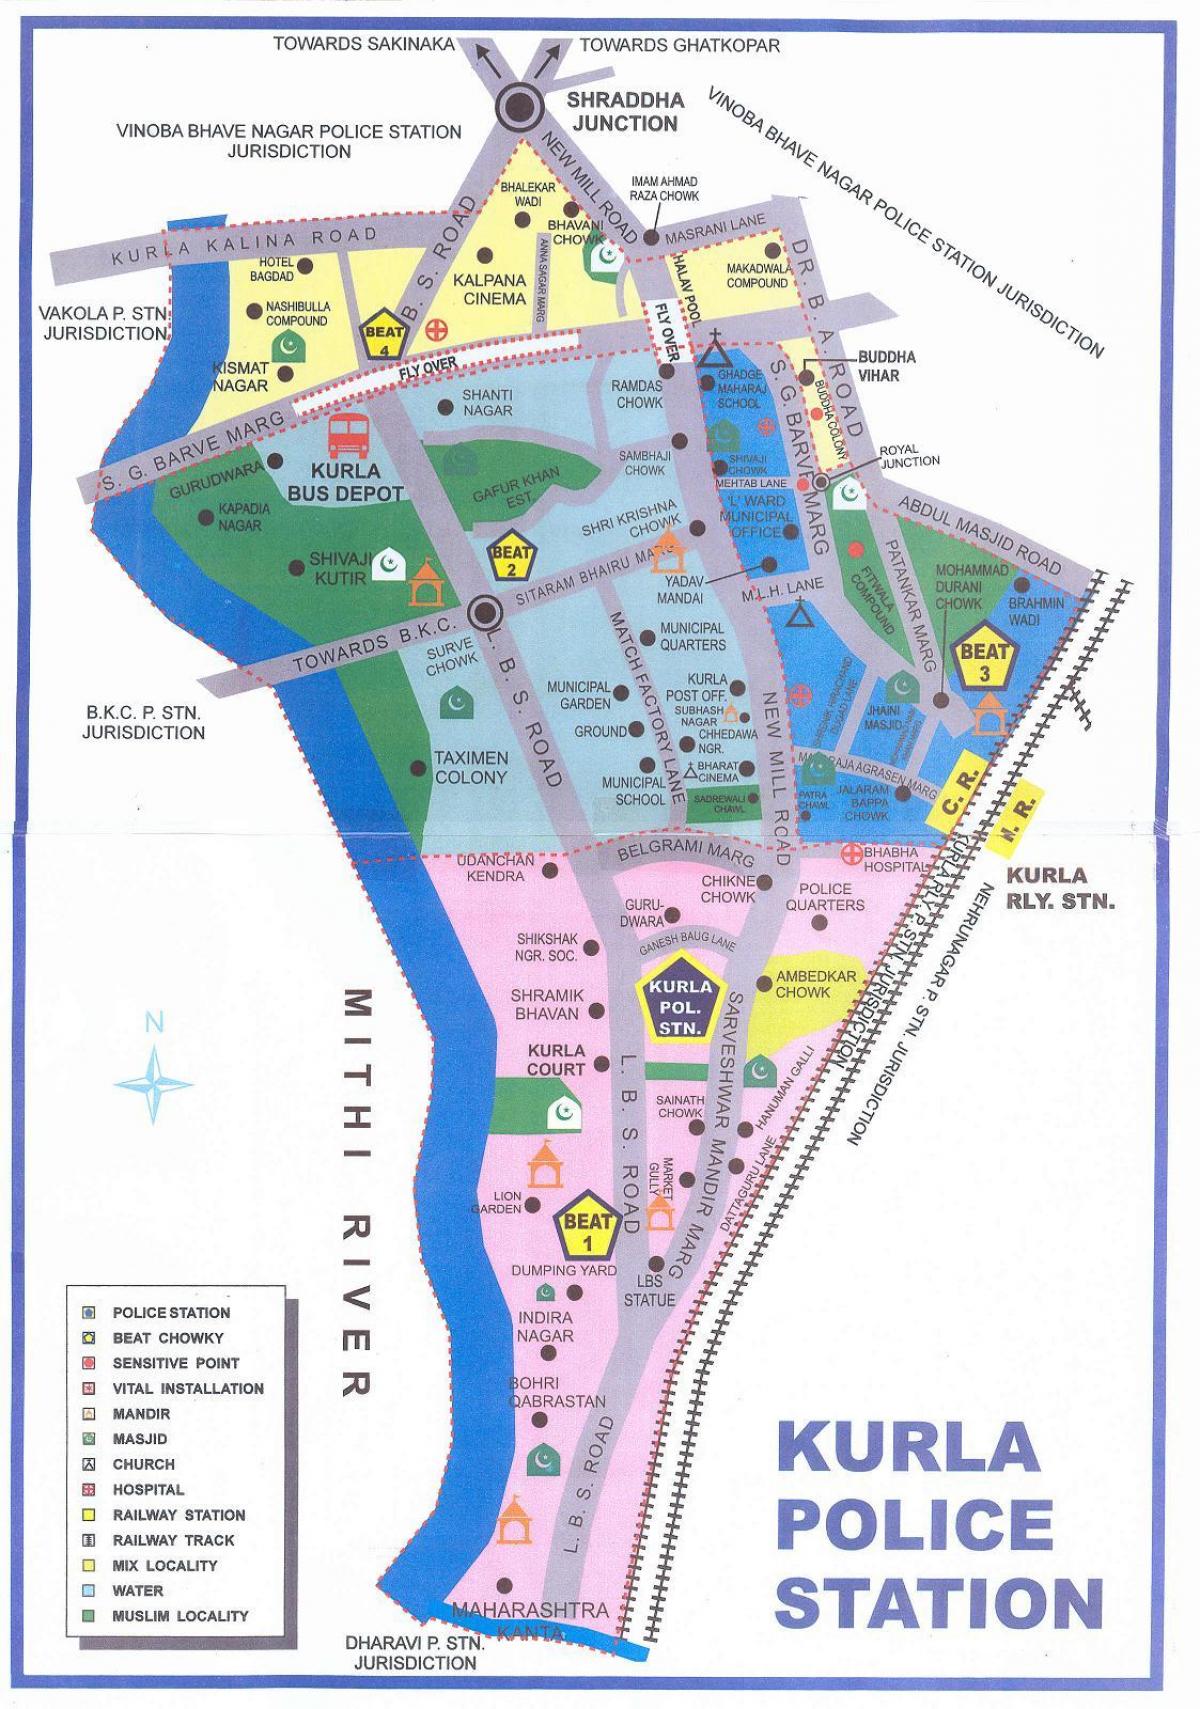 خريطة كورلا مومباي